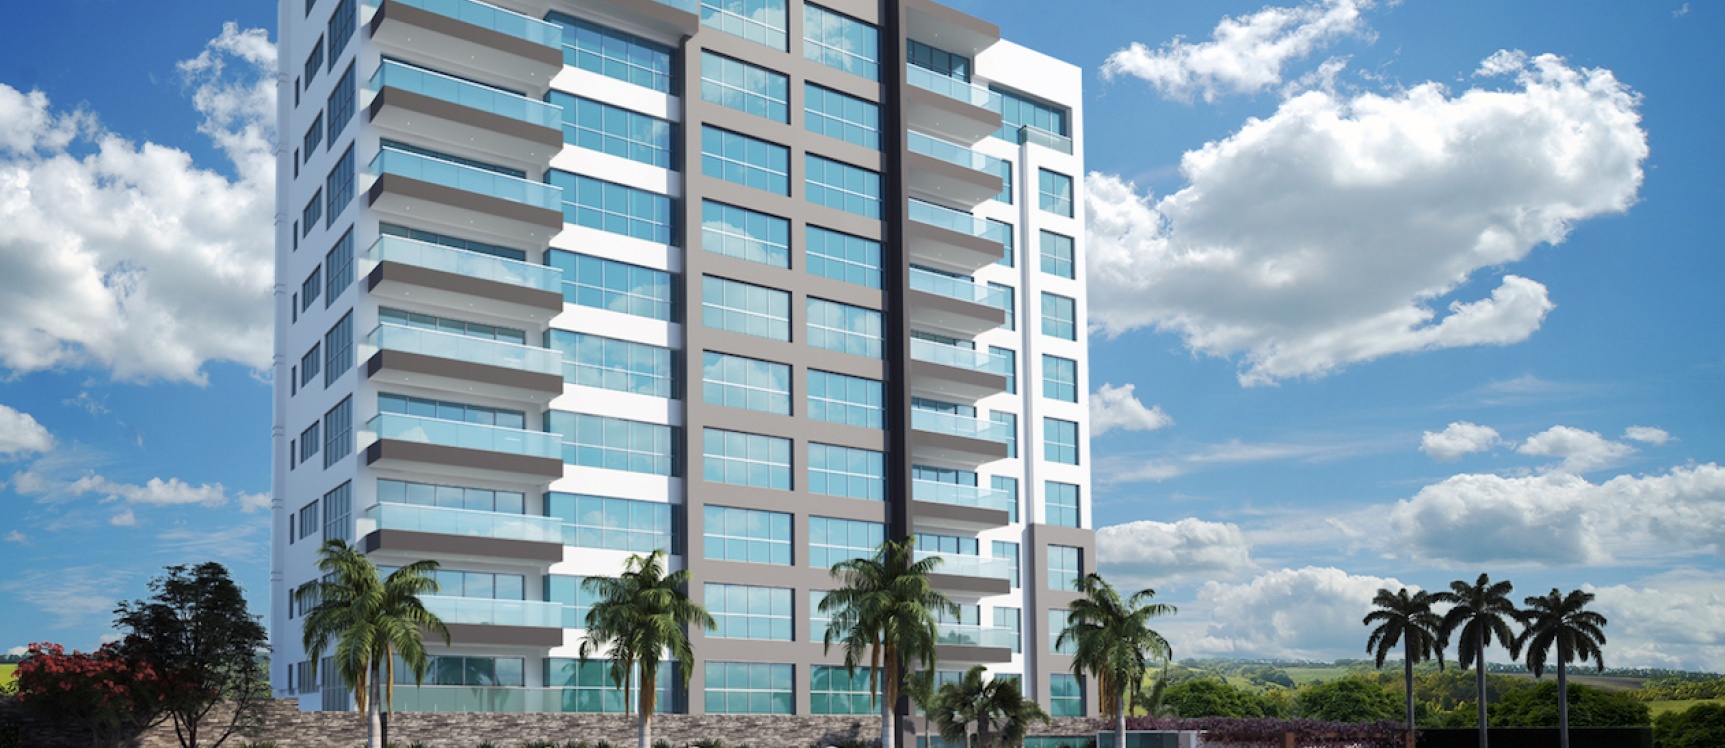 GeoBienes - Departamento A en venta en Mocolí Samborondón Puerto 5000 - Plusvalia Guayaquil Casas de venta y alquiler Inmobiliaria Ecuador